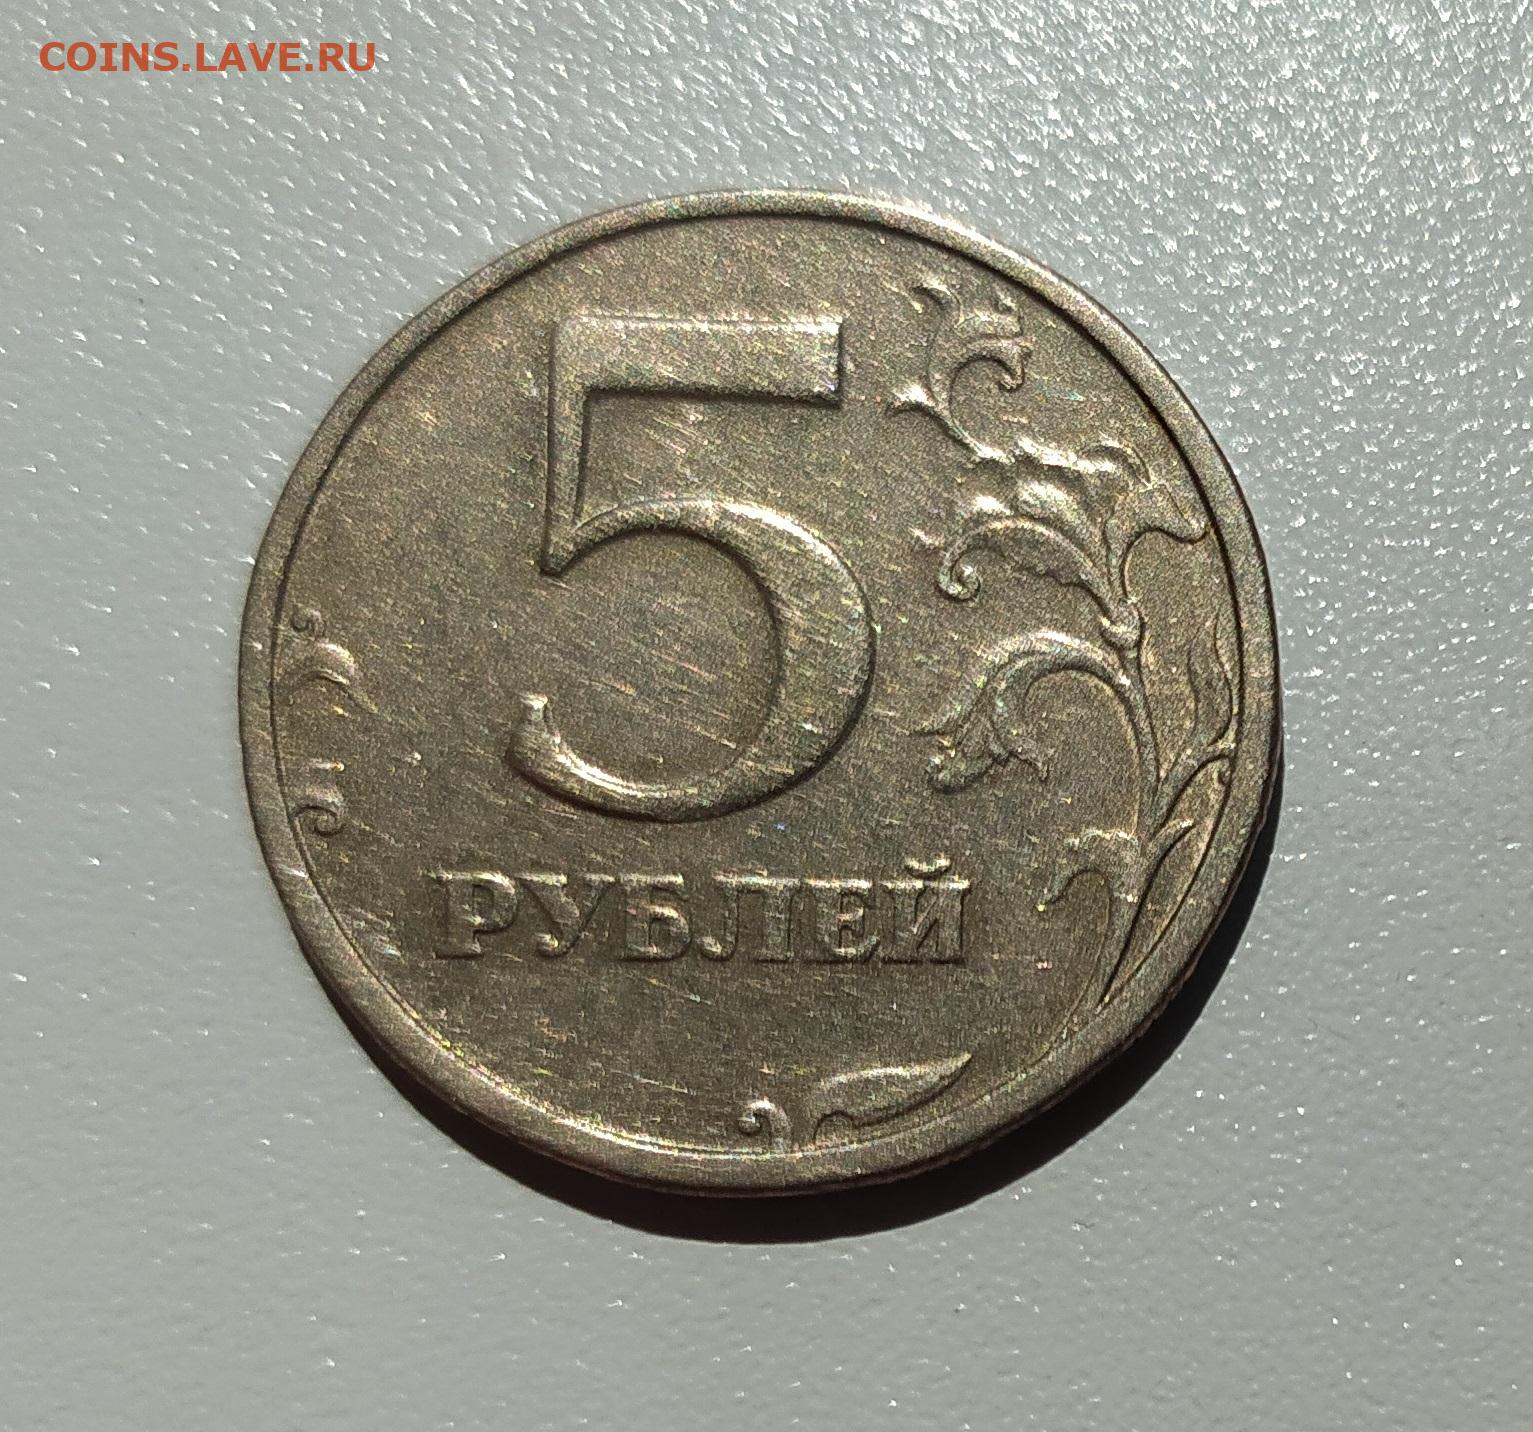 37 5 рублей. Двадцать пять рублей. Двадцать пять рублей латунь 2014. Купить рубль на аукционе 2003 года.